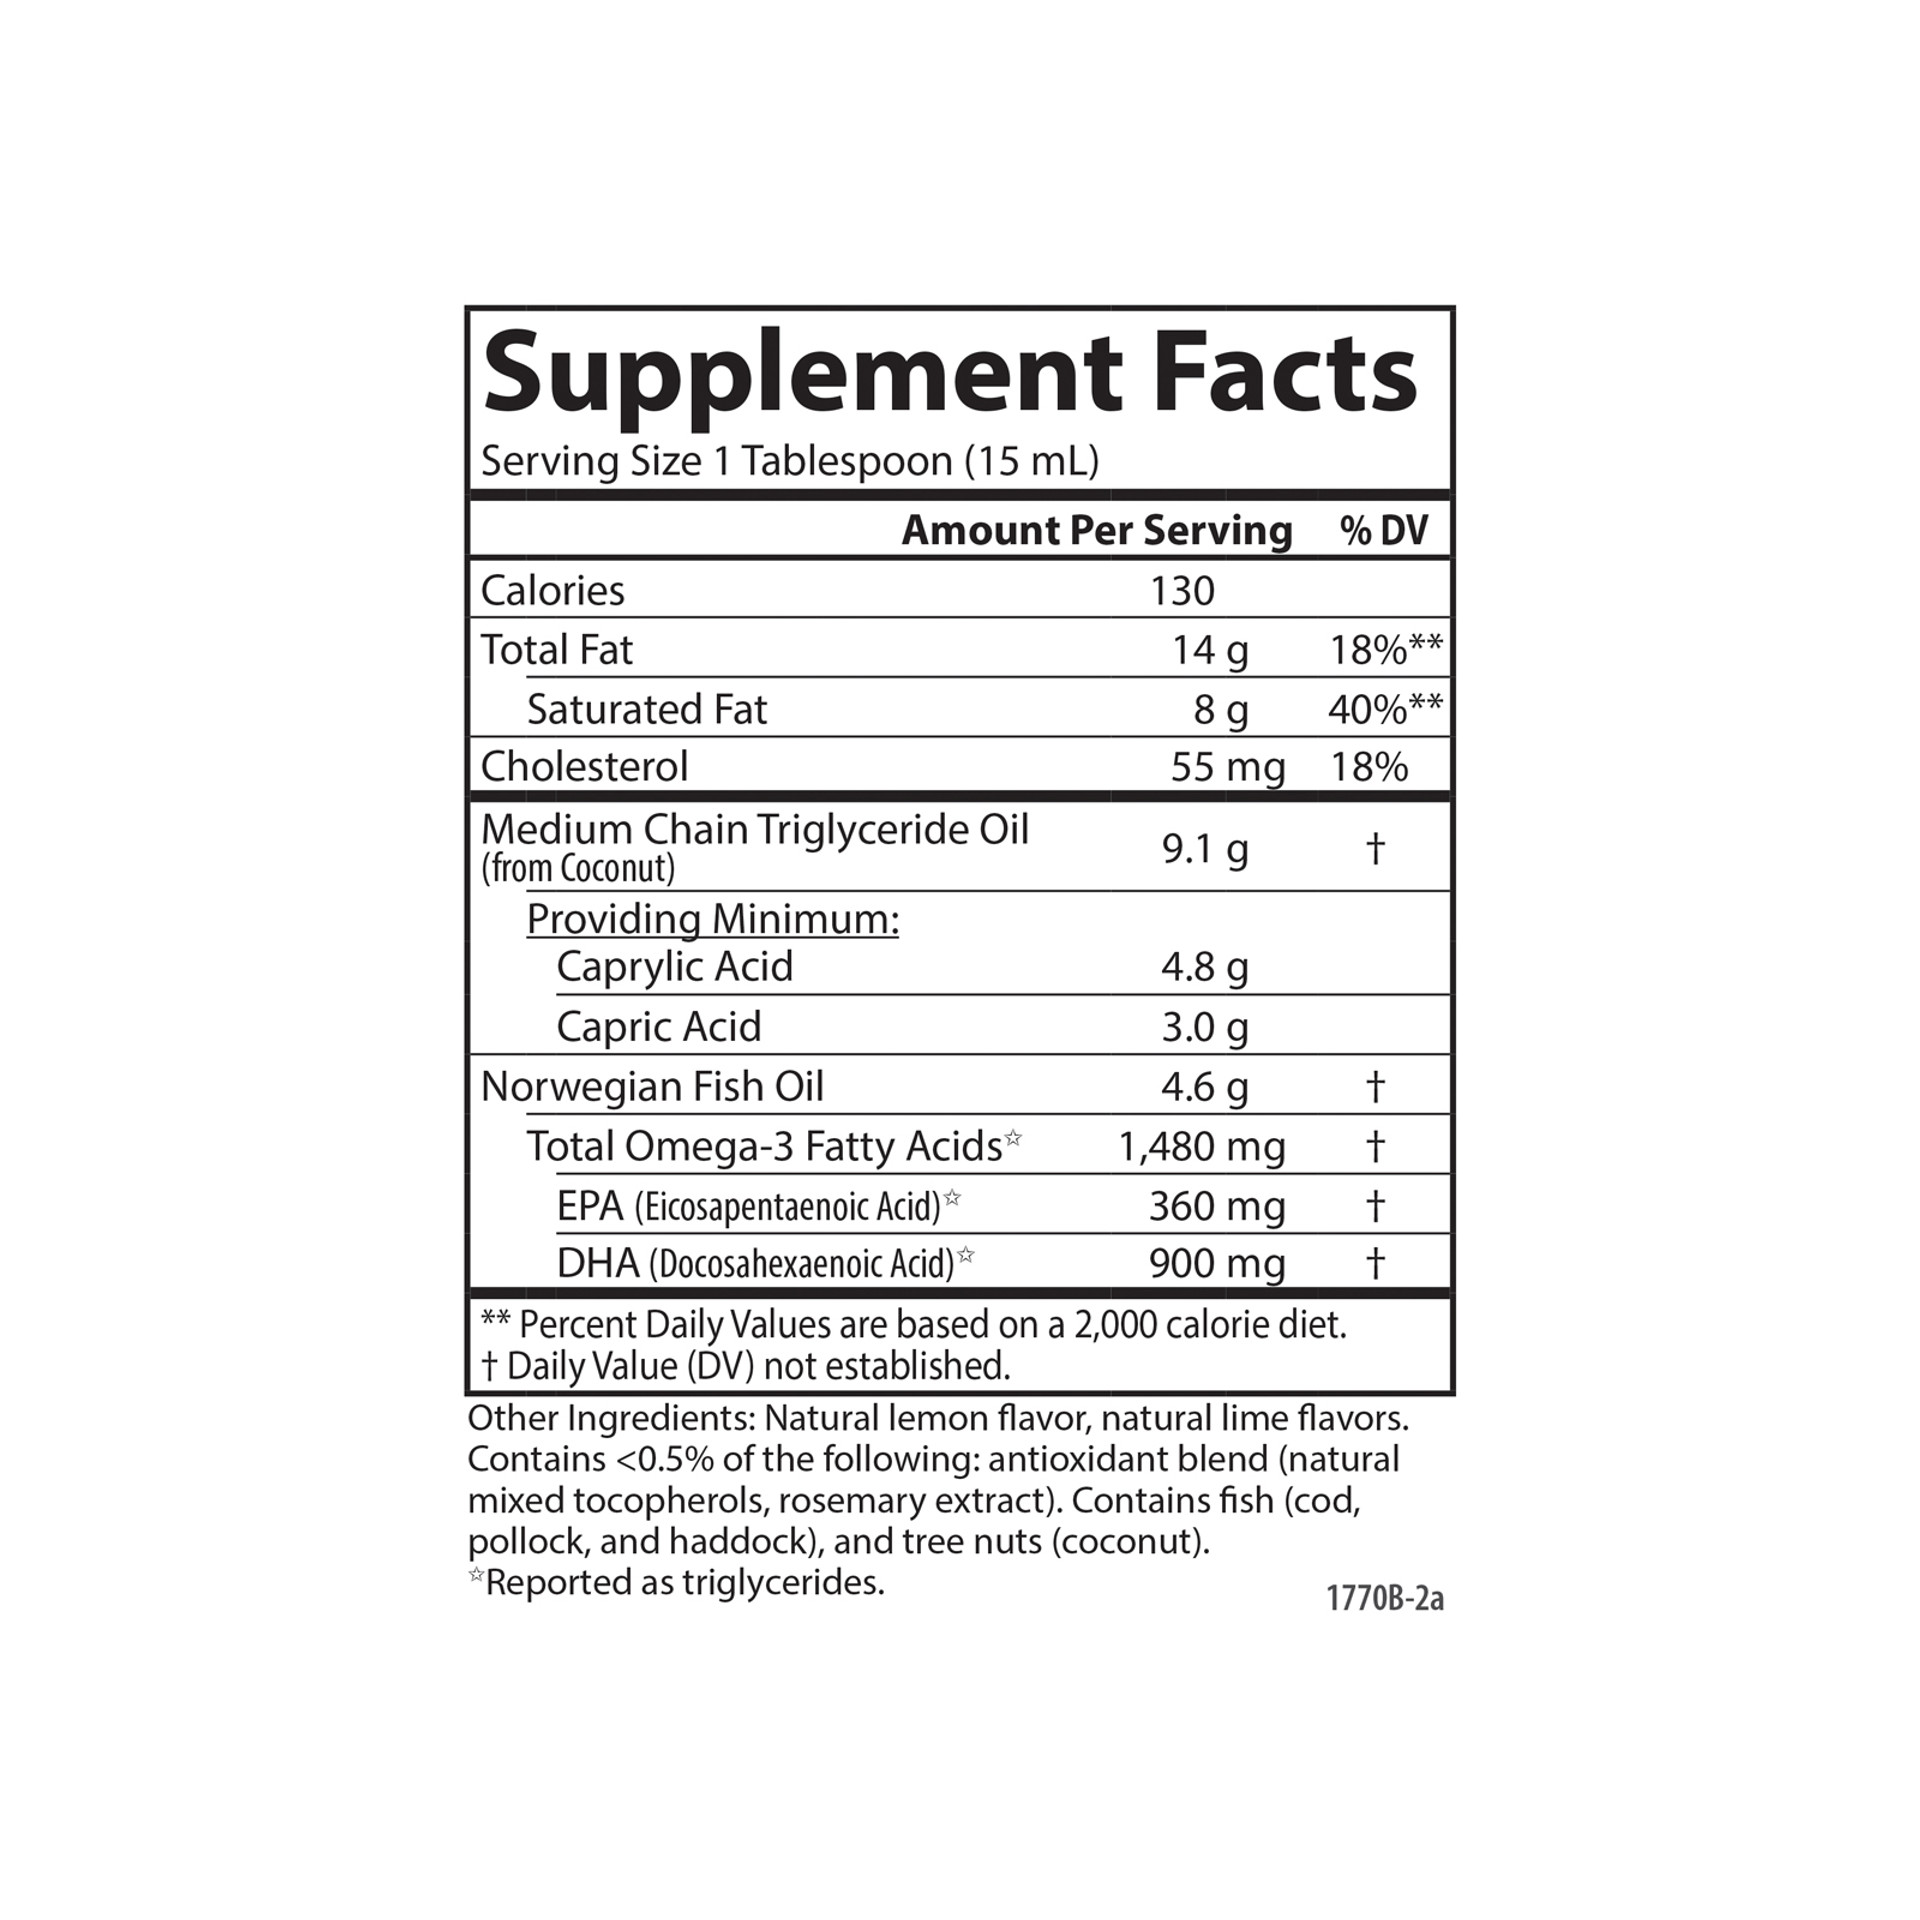 MCT & Omega-3 | 1,480 mg Omega-3s + 9,200 mg (9.2 g) MCTs